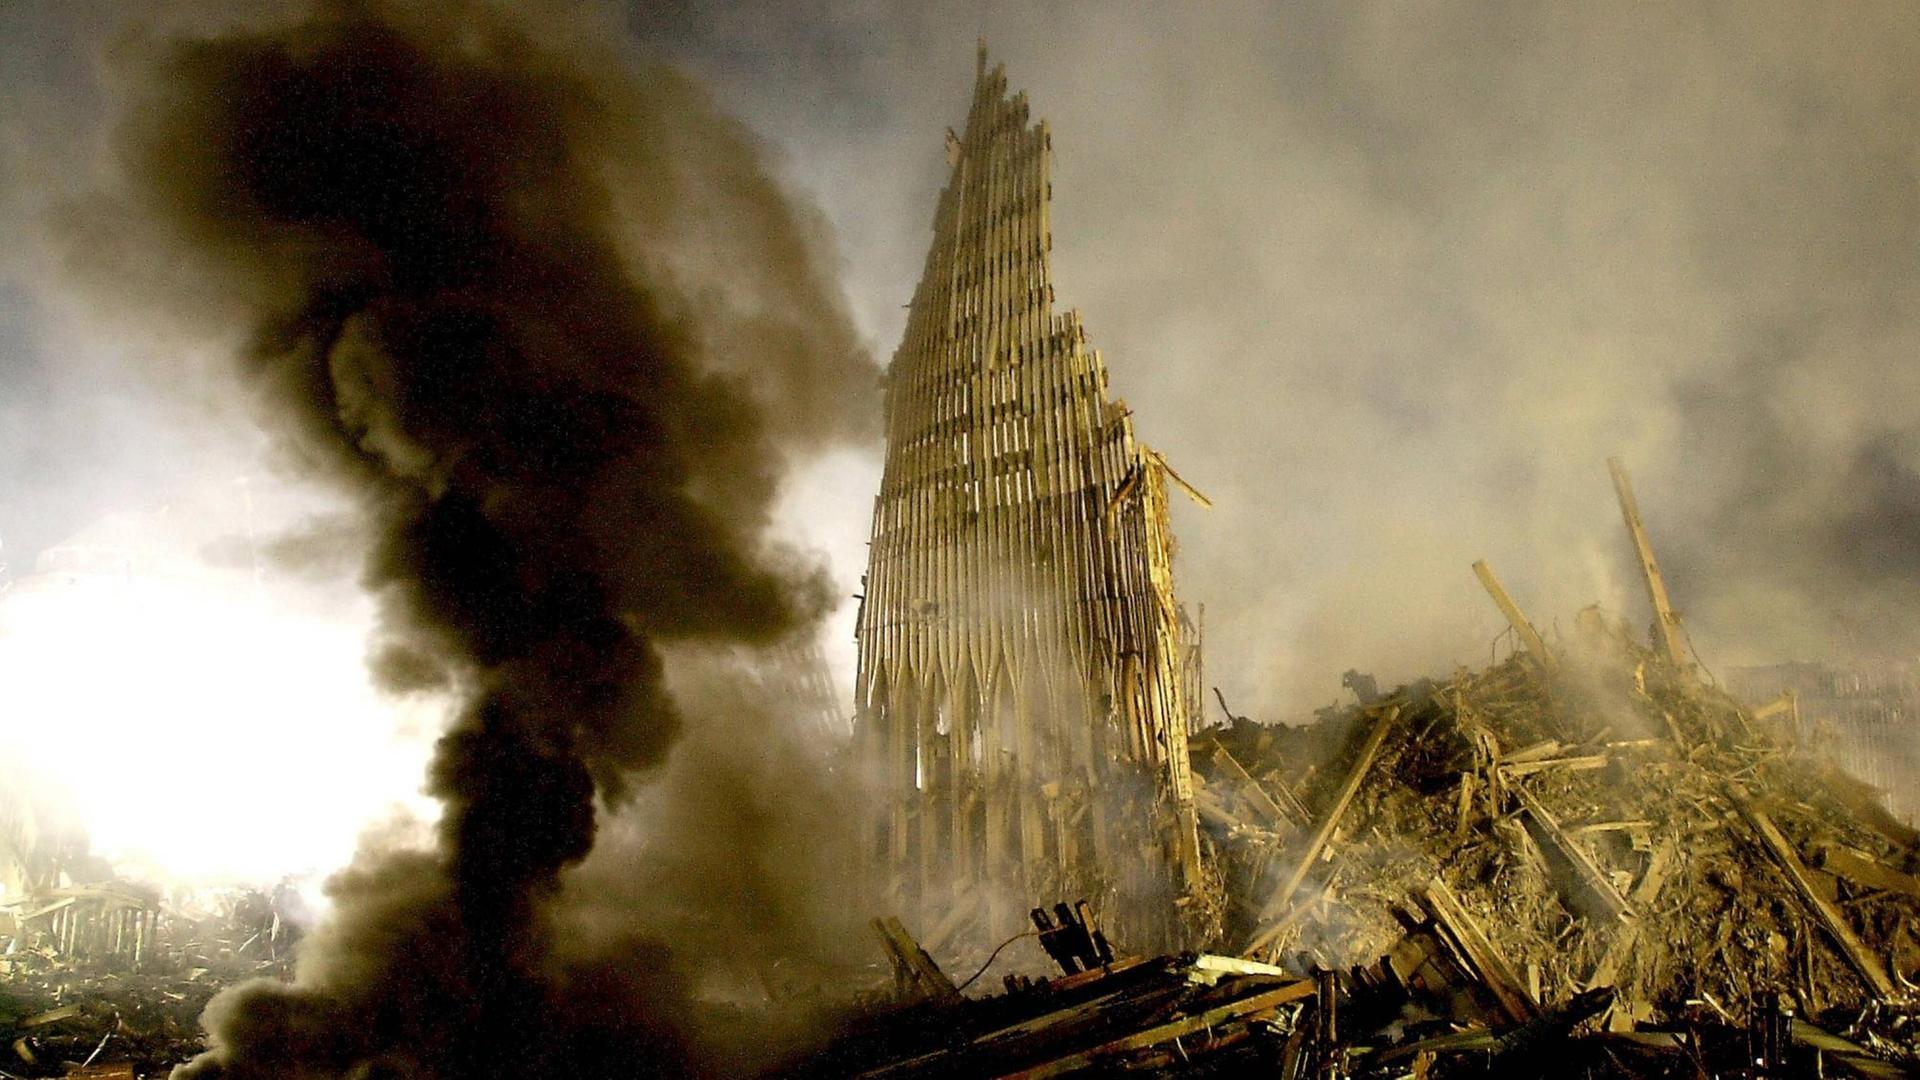 Die rauchende Ruine des World Trade Centers kurz nach den Anschlägen von 2001.